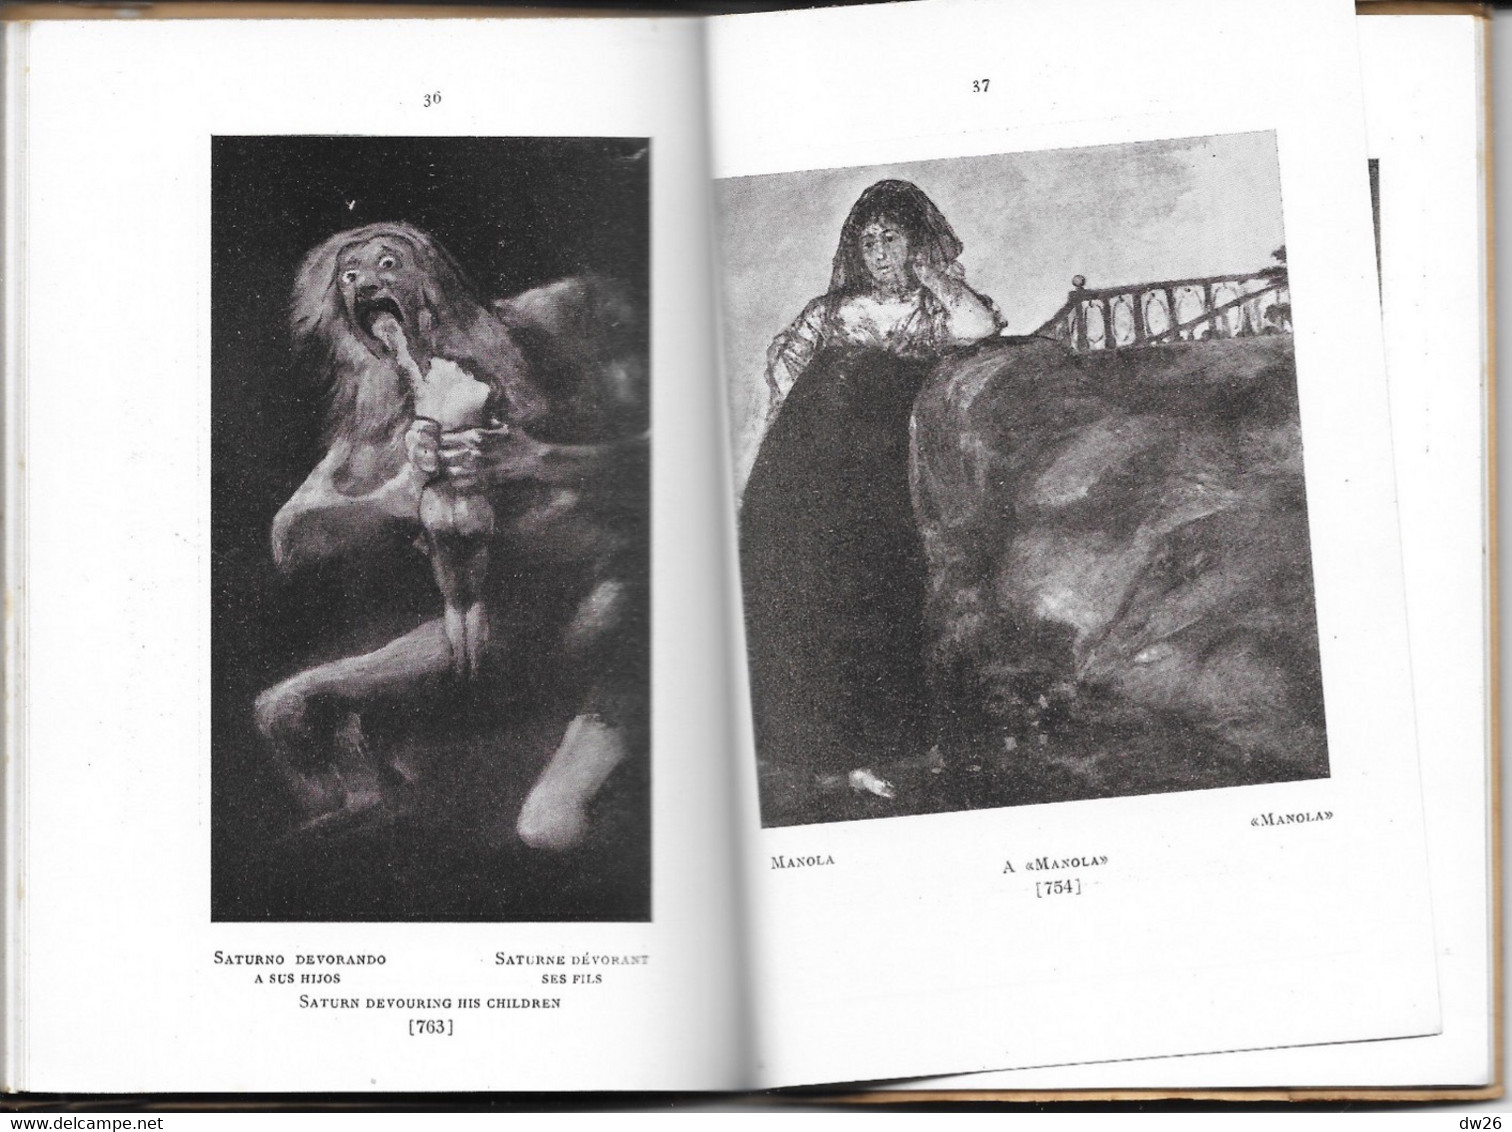 Livre D'Art Broché: El Arte En España, Goya En El Museo Del Pardo - Edition Thomas N° 14 - Cultural